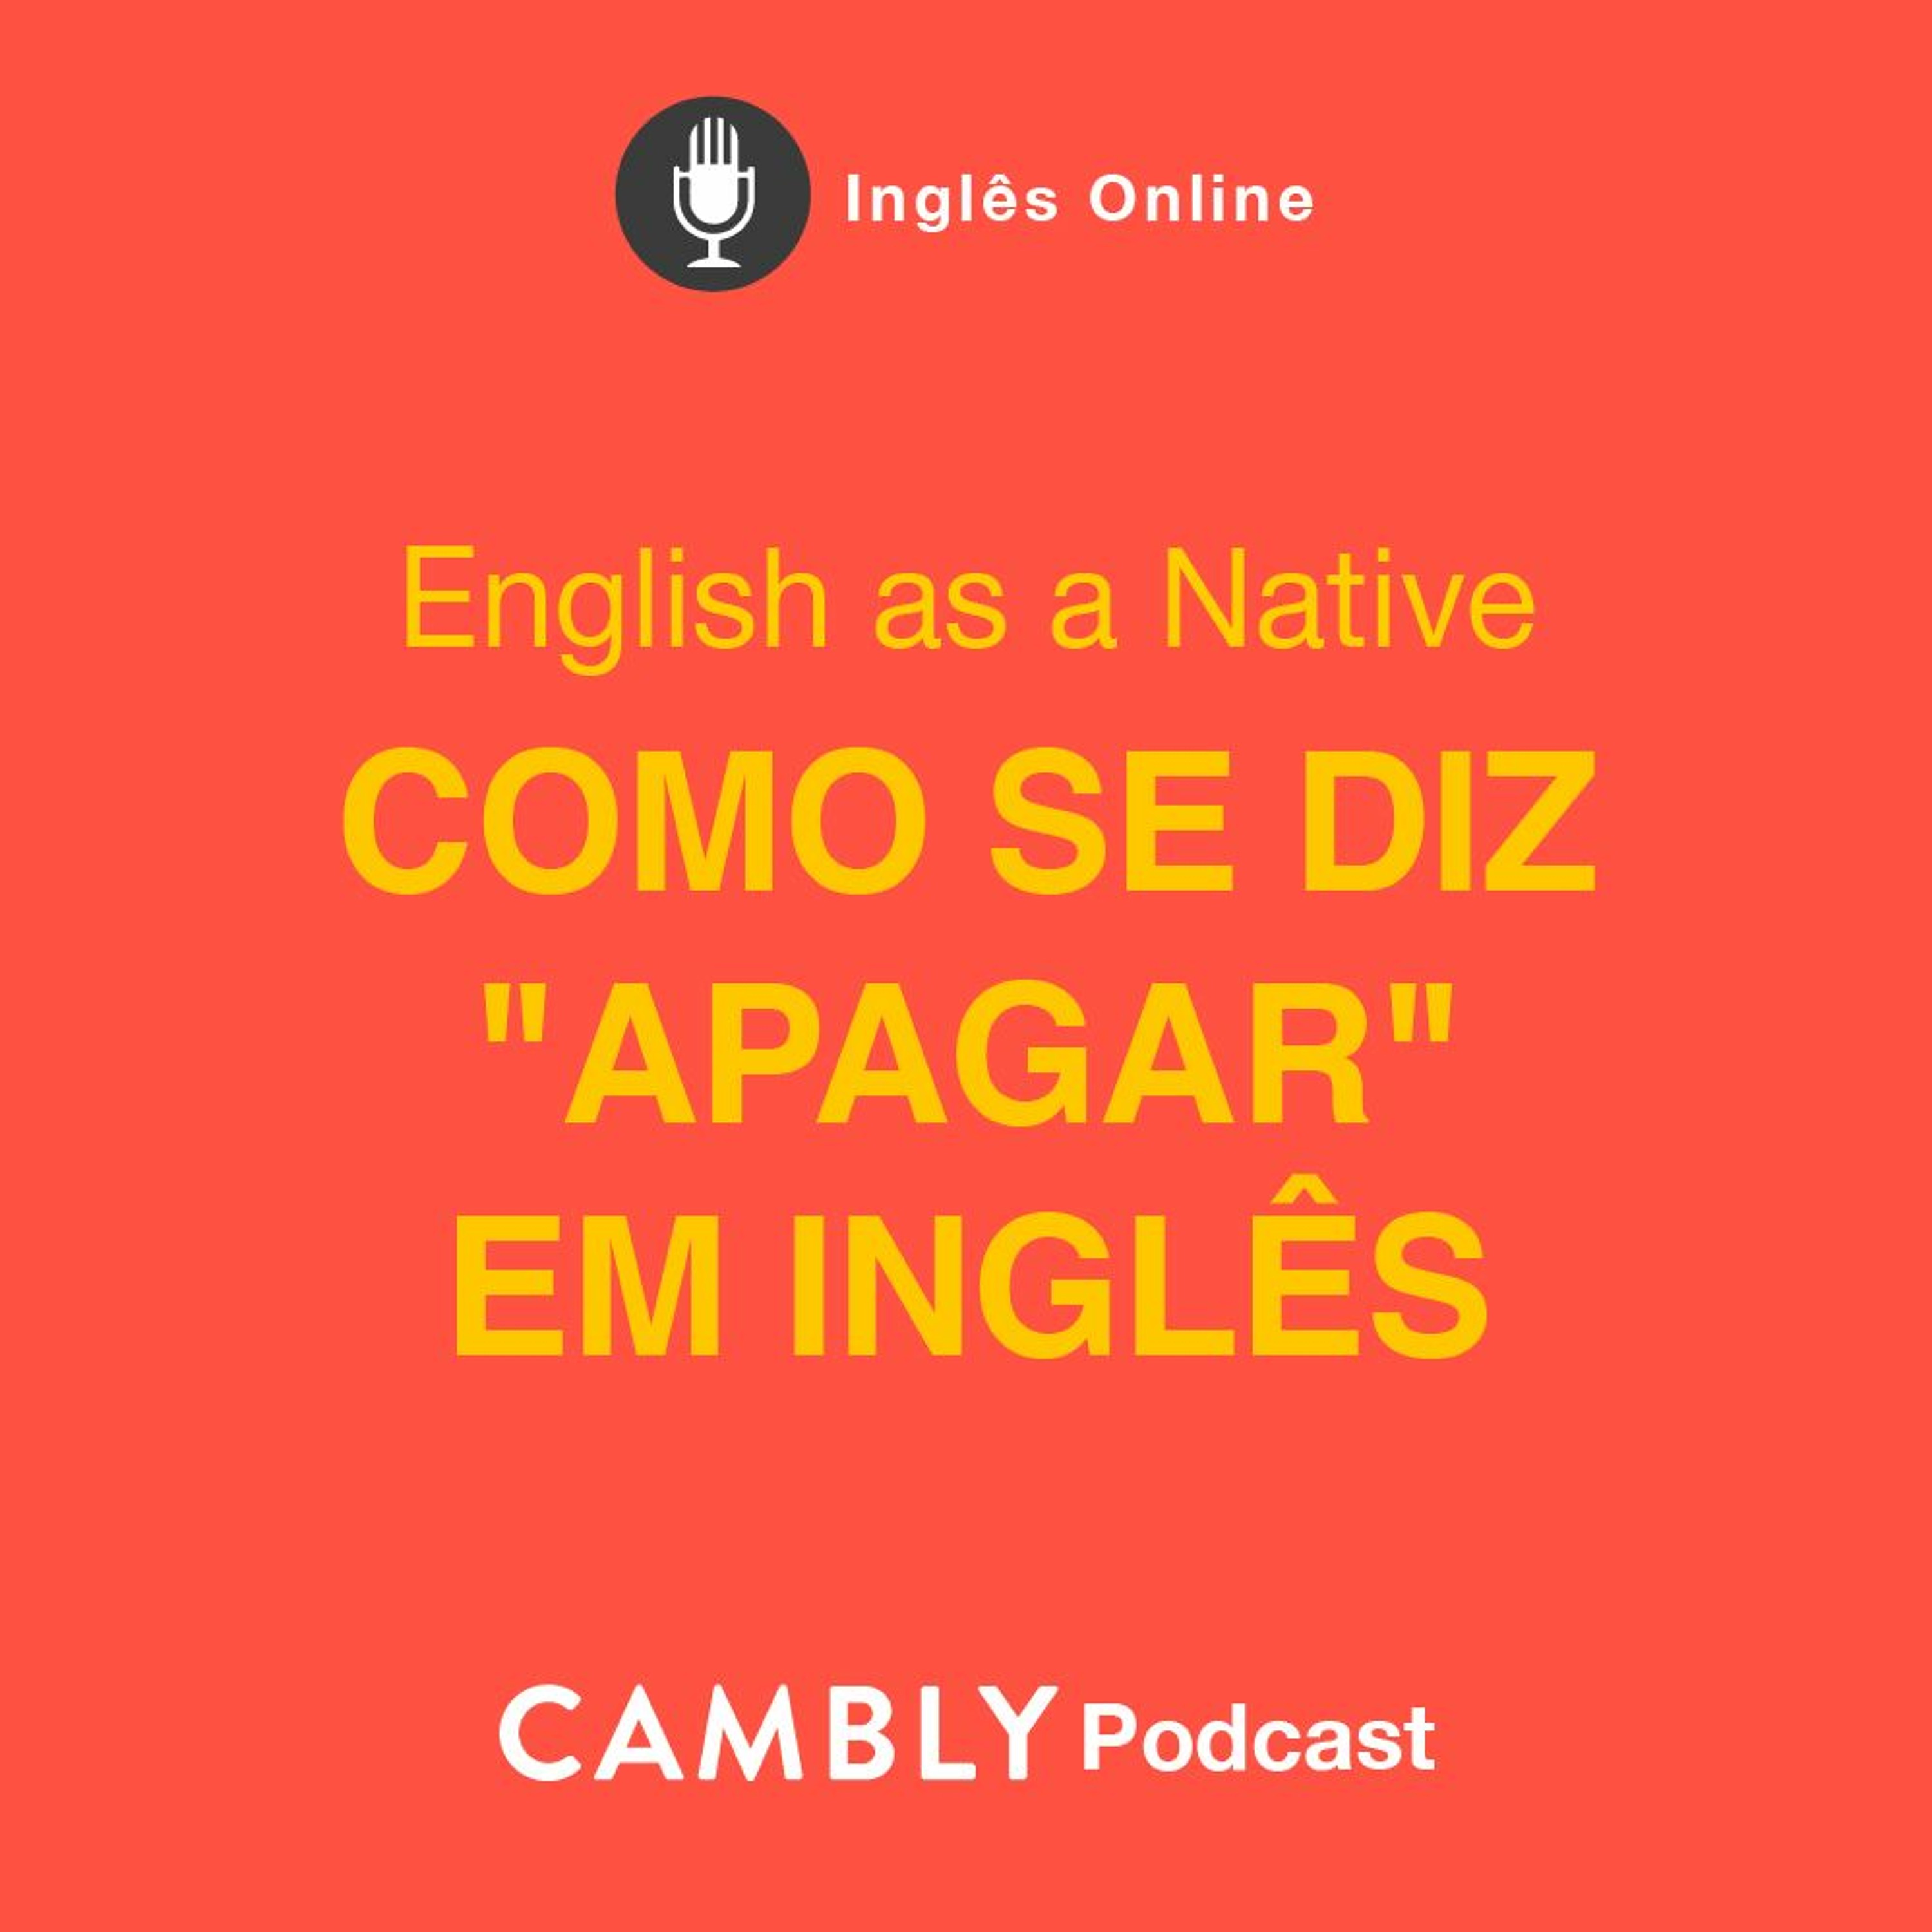 Ep 292. Como se diz "APAGAR" em inglês? | English as a Native